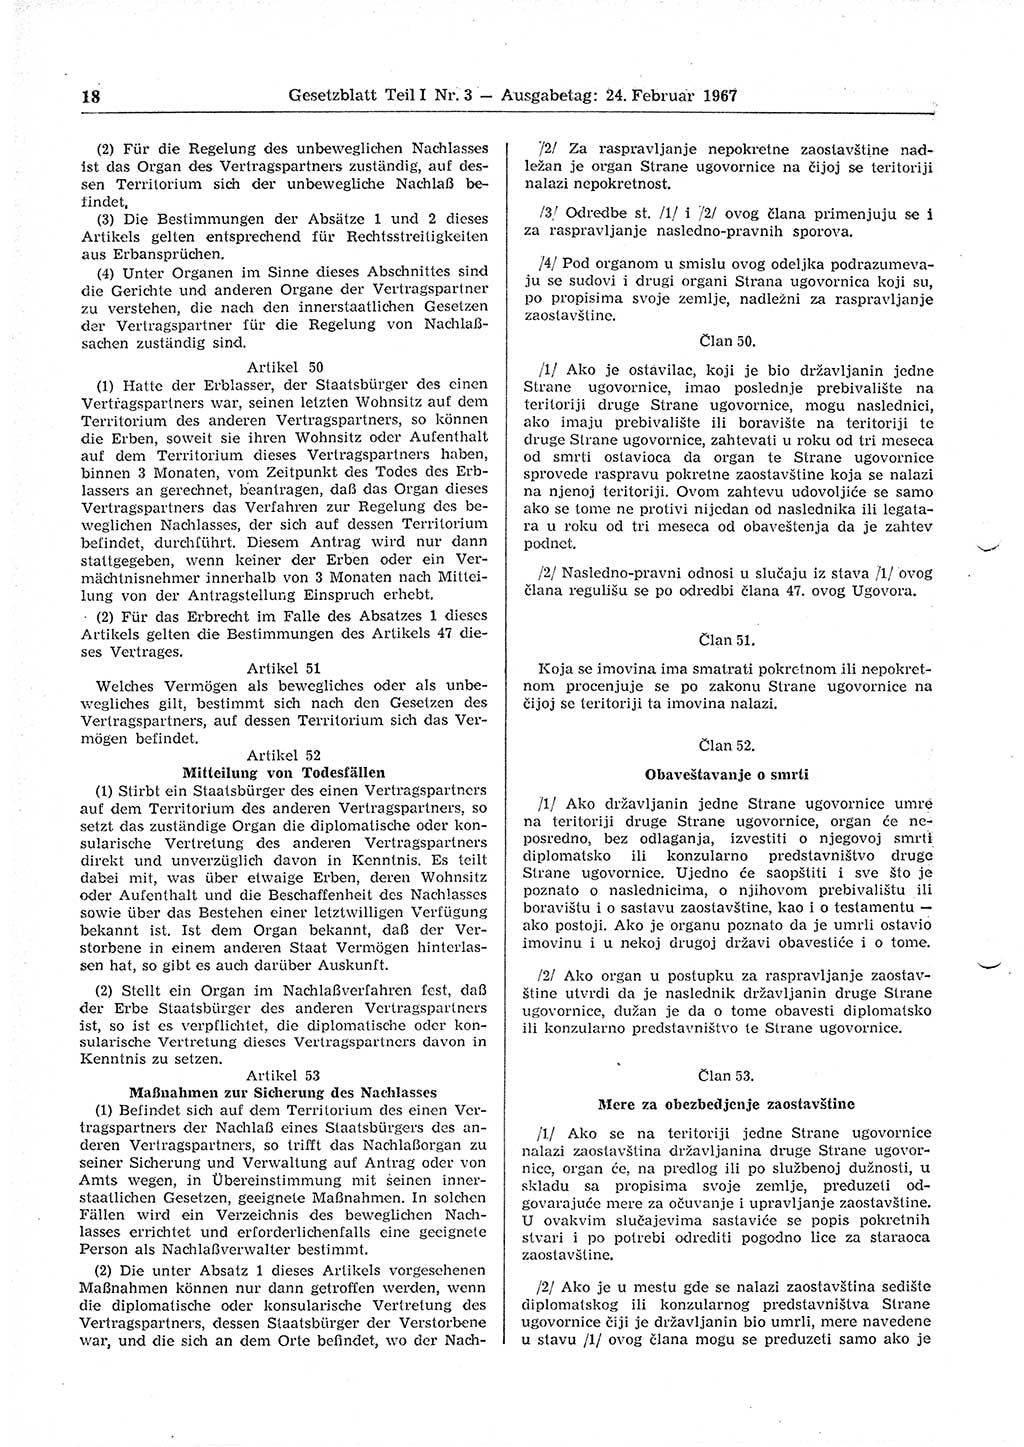 Gesetzblatt (GBl.) der Deutschen Demokratischen Republik (DDR) Teil Ⅰ 1967, Seite 18 (GBl. DDR Ⅰ 1967, S. 18)